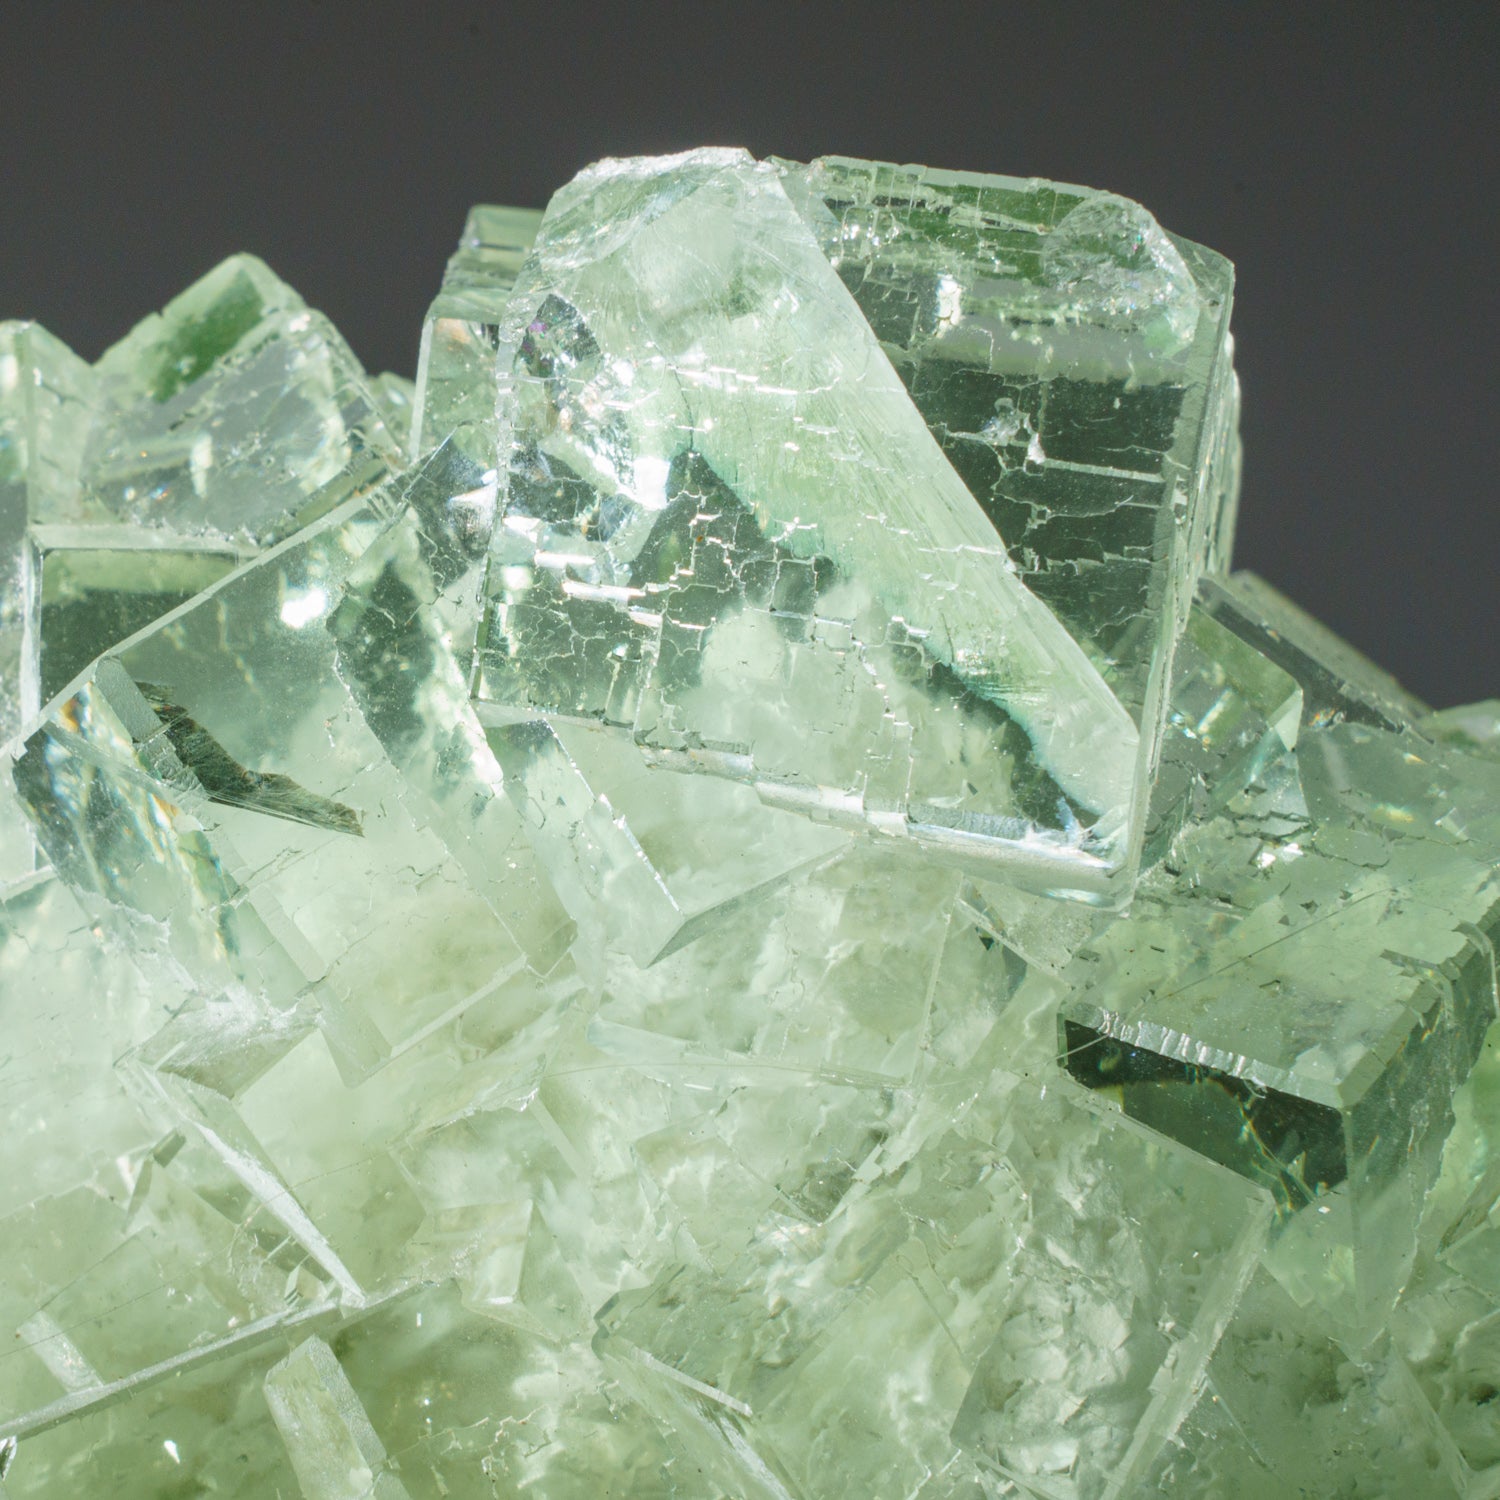 Green Fluorite from Xianghualing Mine, Chenzhou, Hunan, China